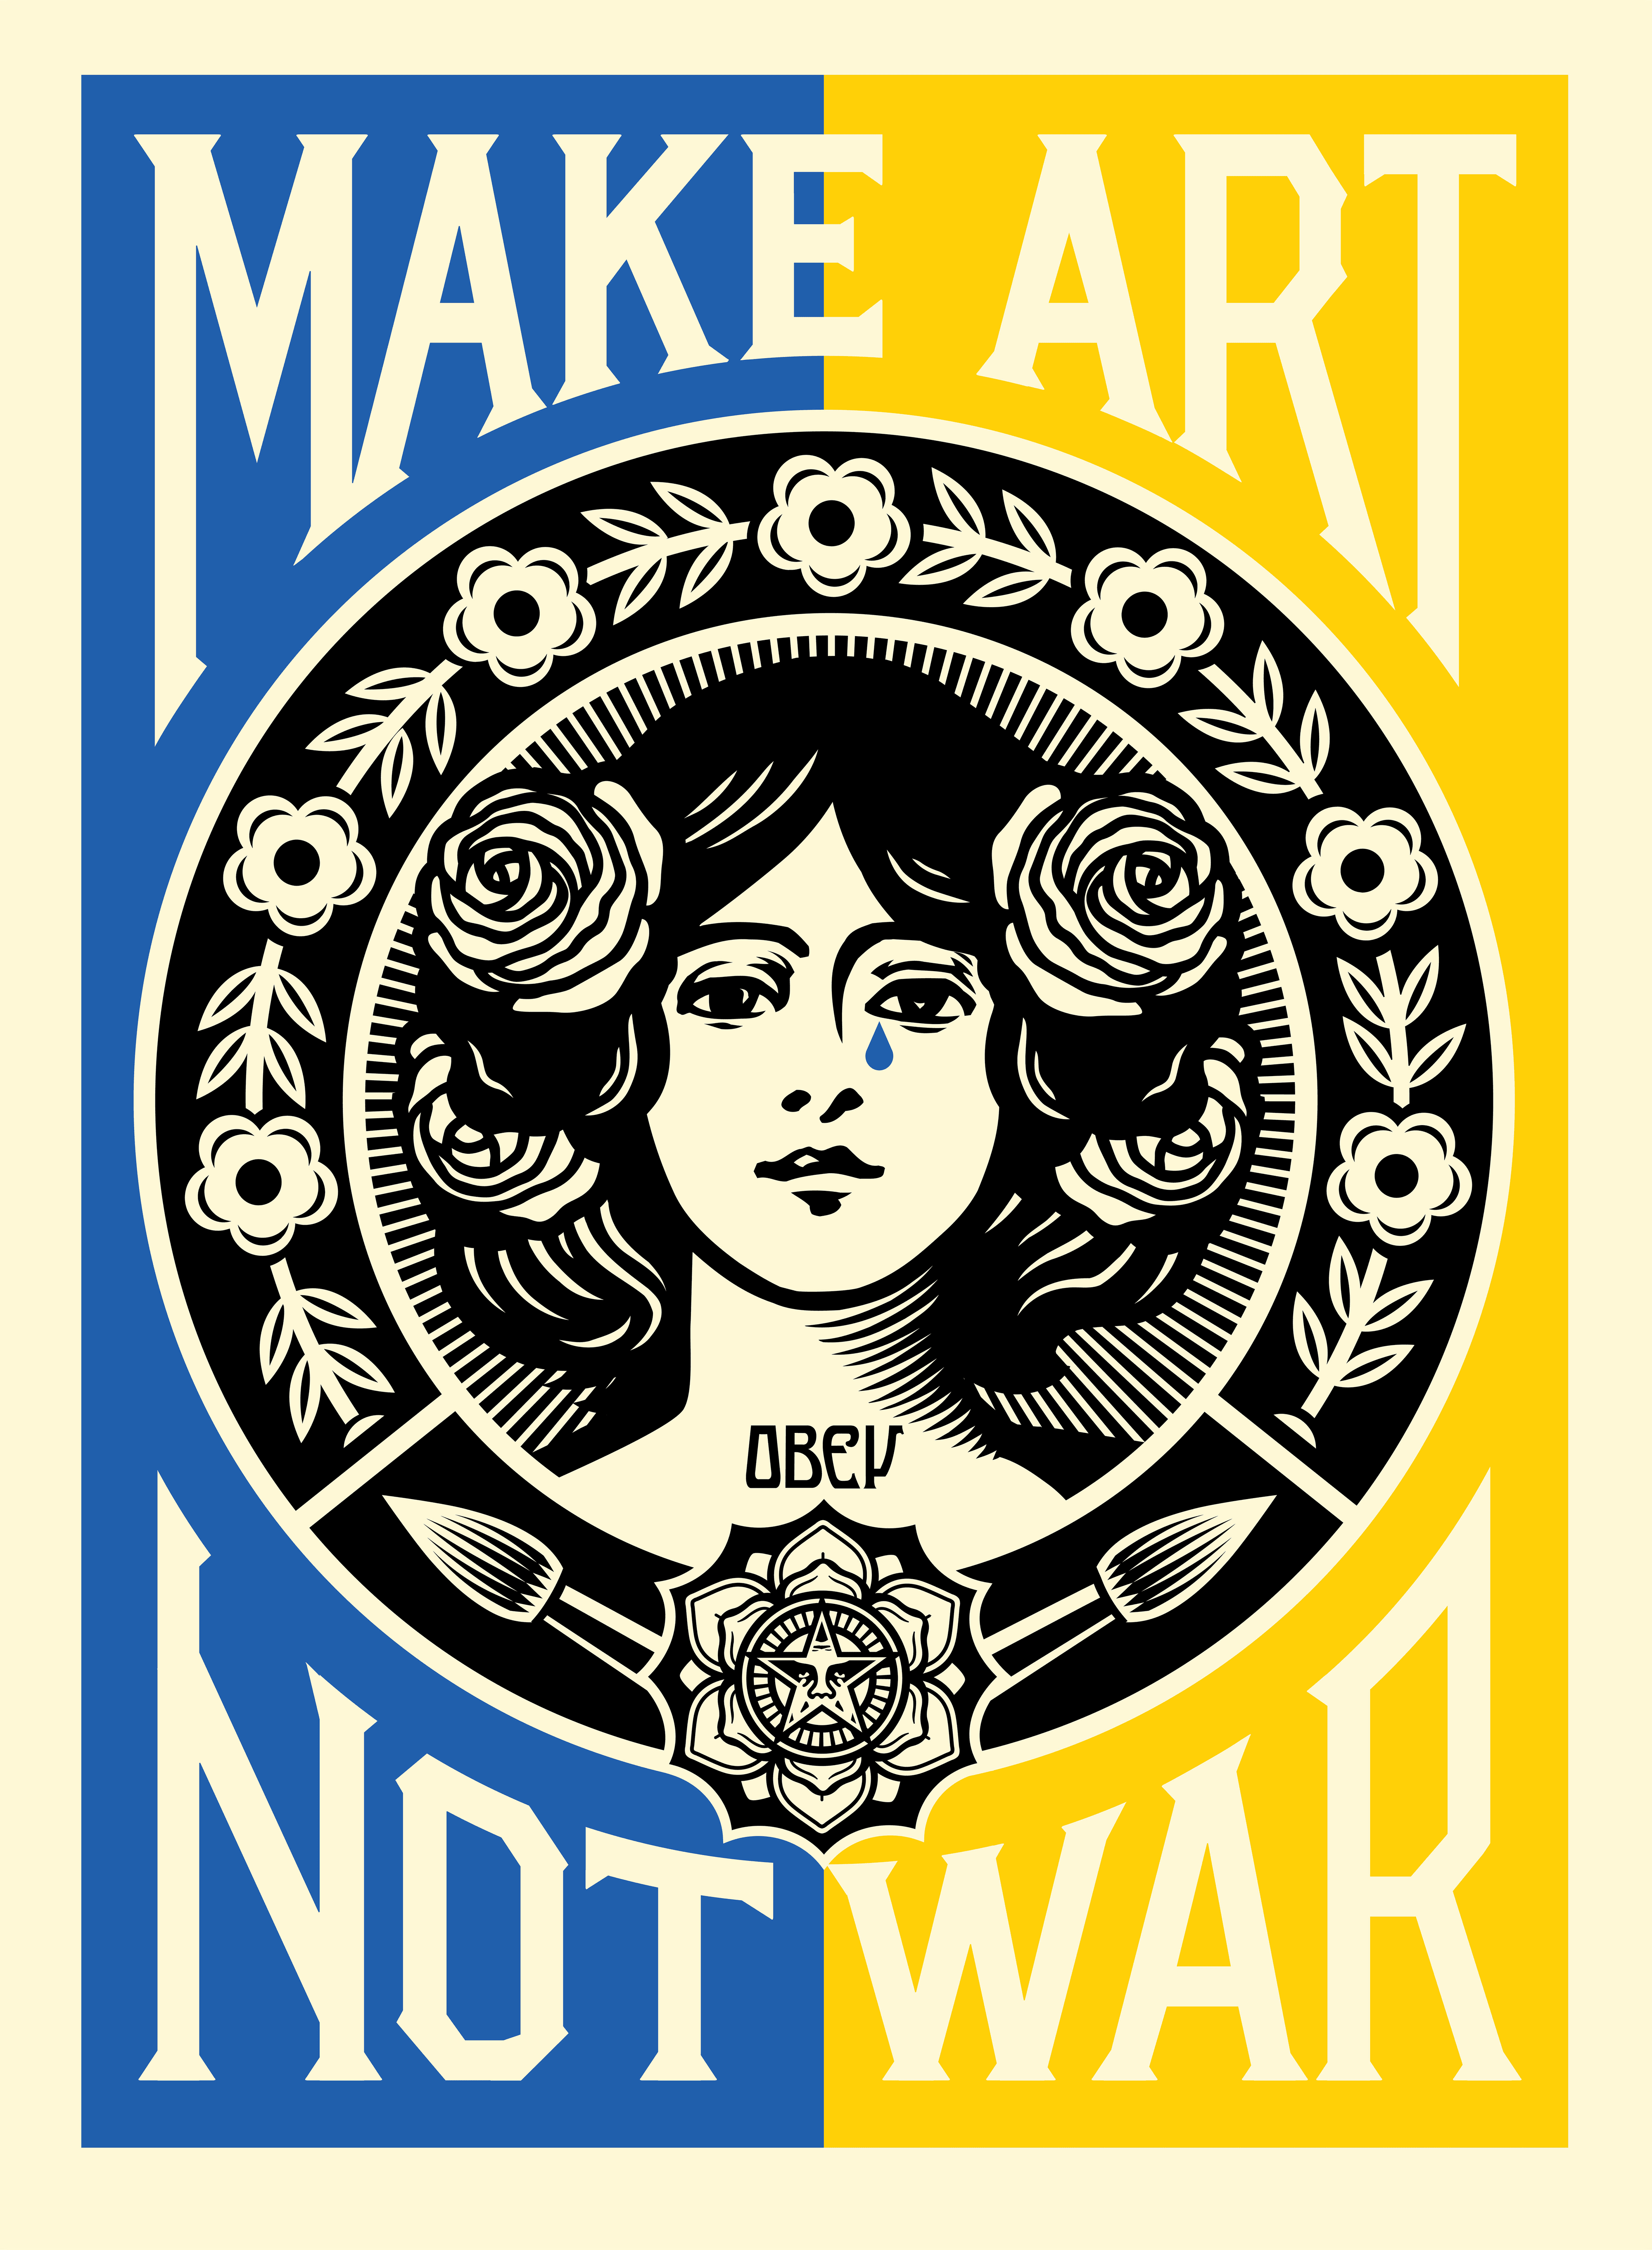 Make Art Not War - Ukraine